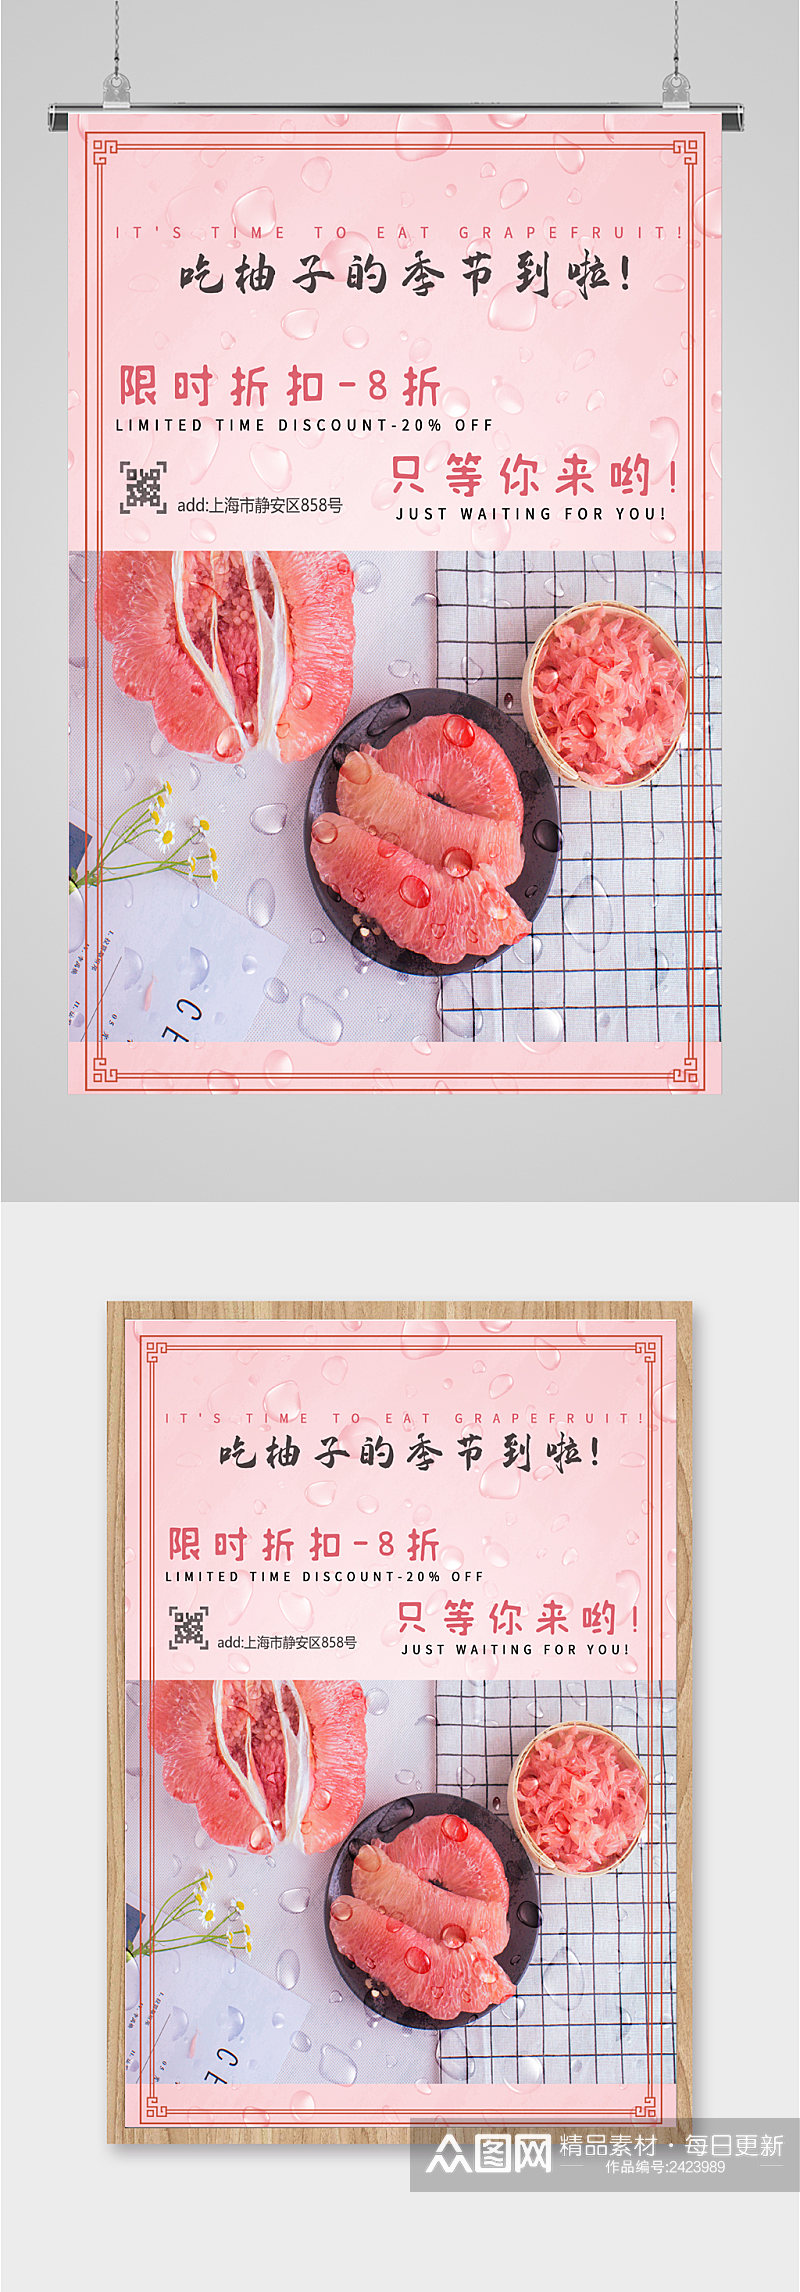 柚子红柚西柚新鲜水果海报素材